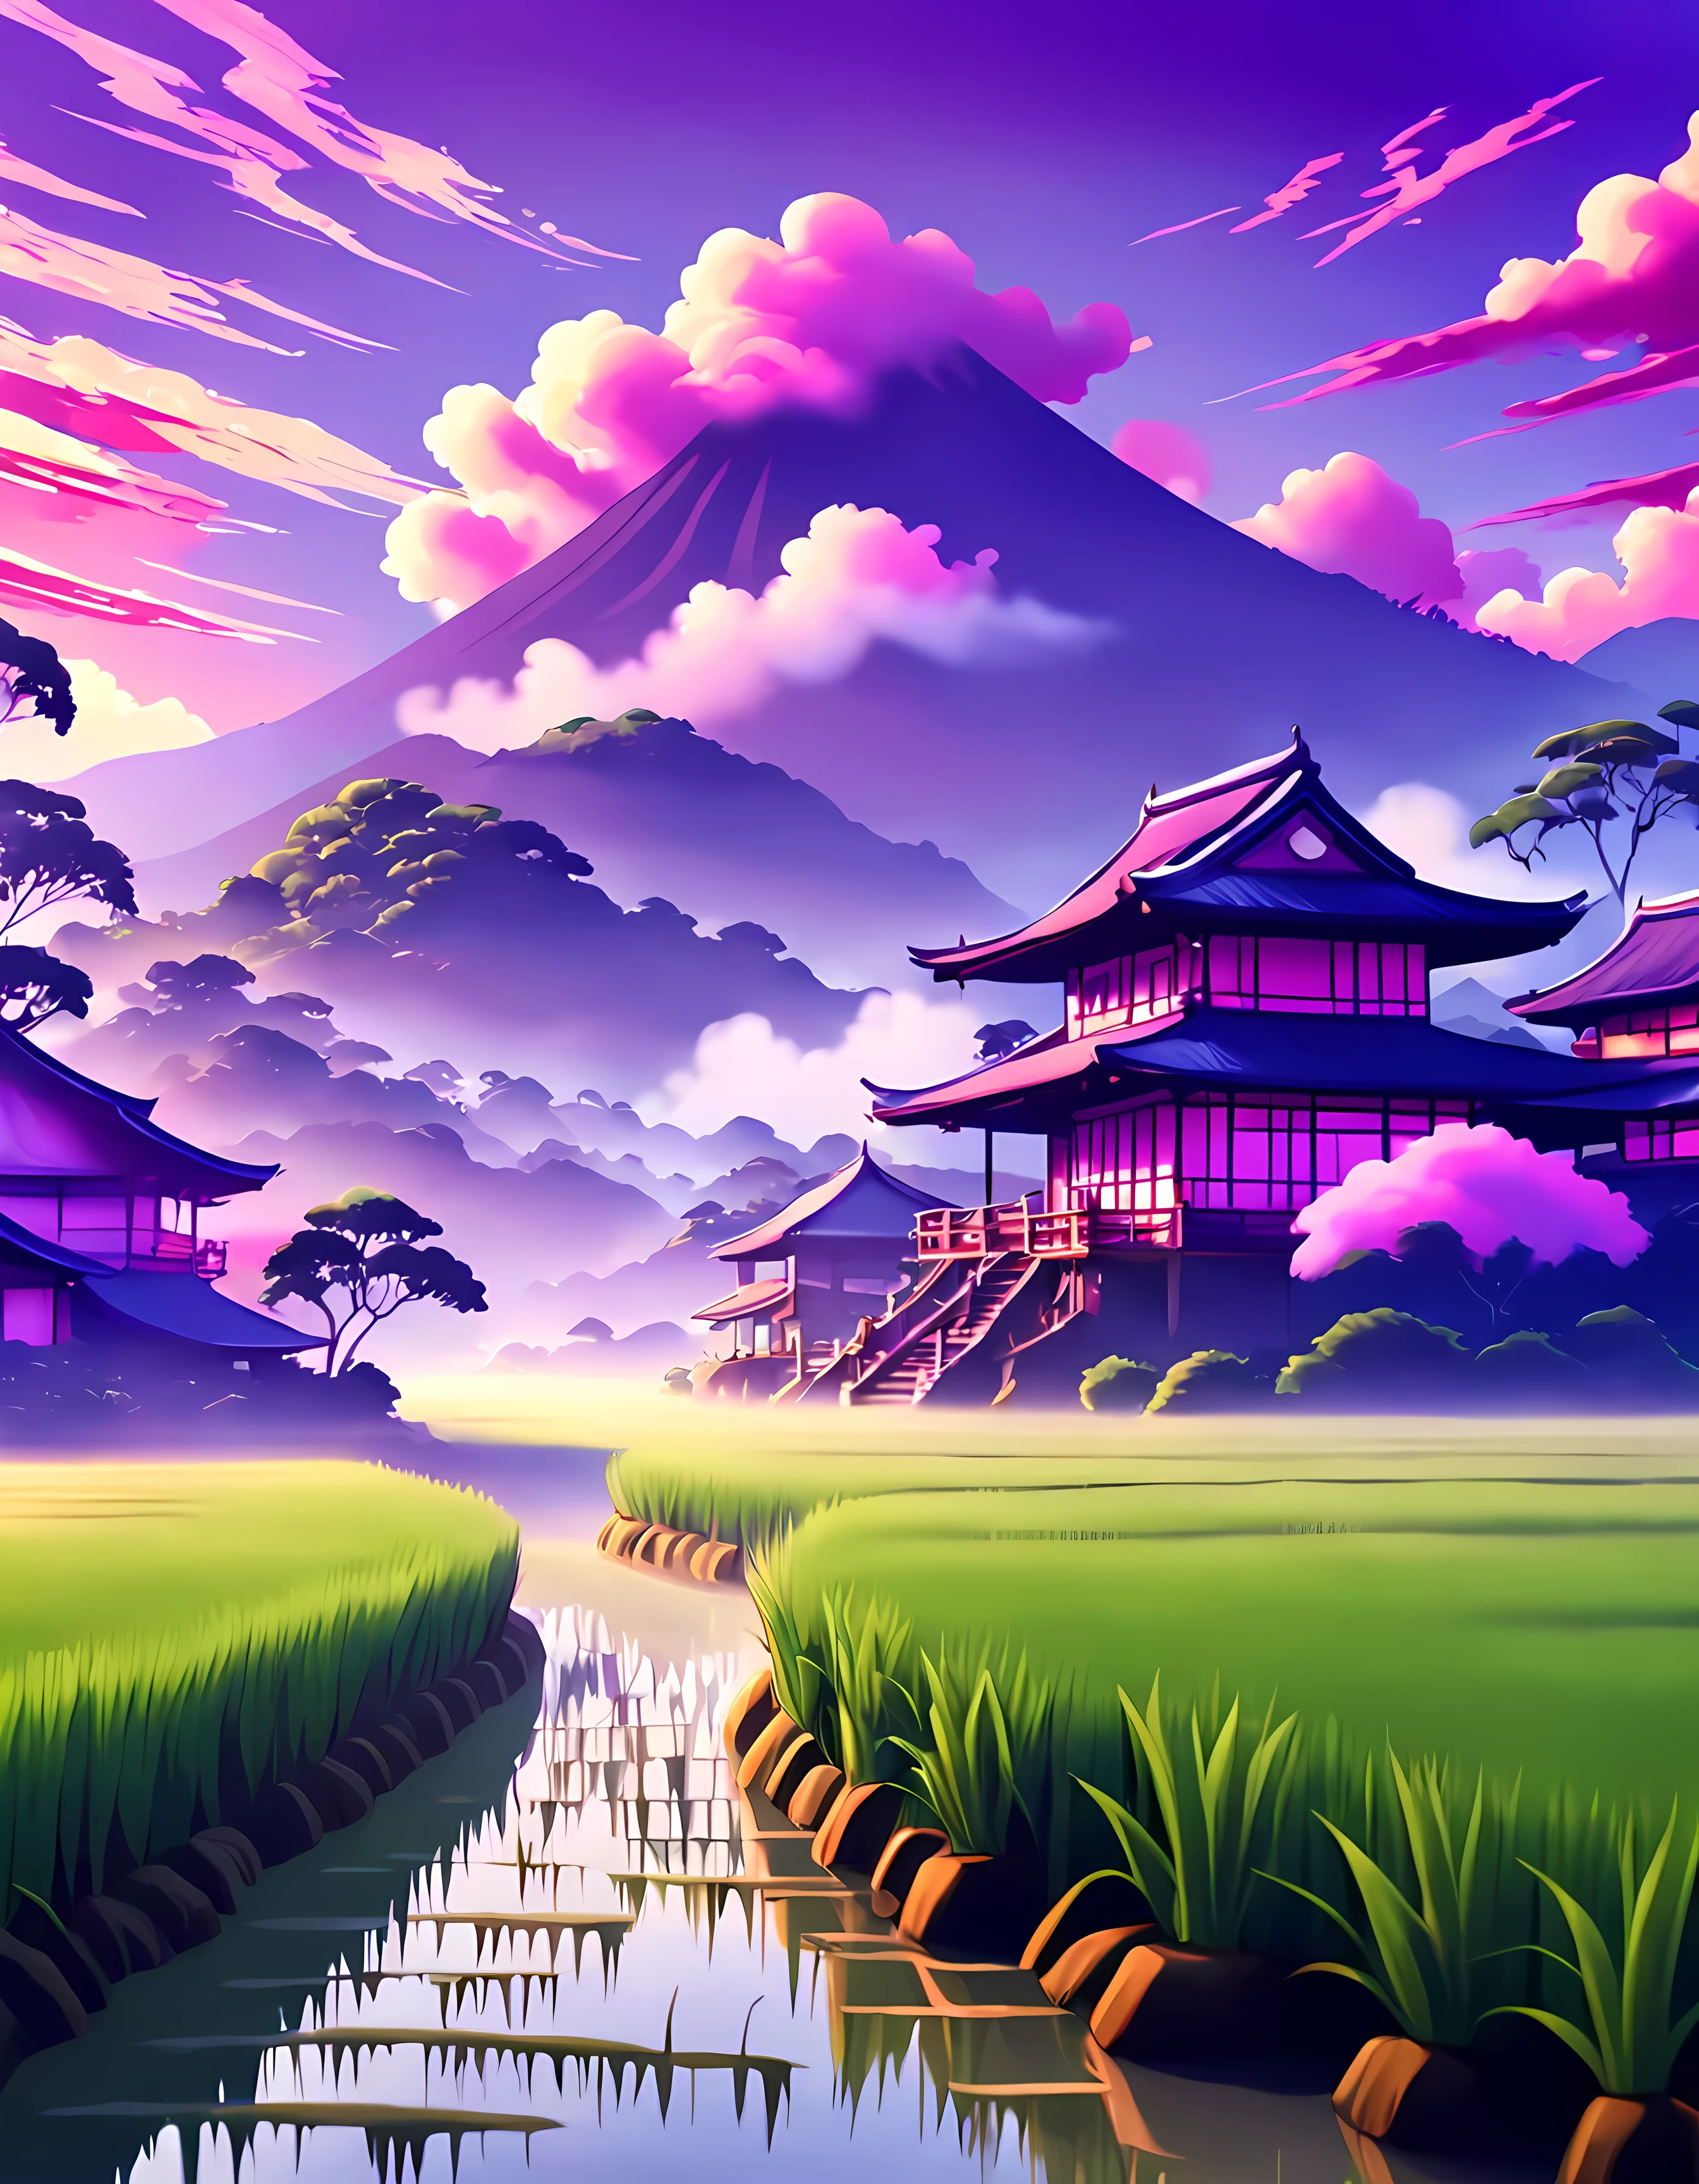 (Surrelation:1.4), süßer Anime-Stil, Entwerfen Sie ein fesselndes Bild von einem ((mystischer Nebel)) schwebend über einem ((üppiges Reisfeld)), faszinierende Morgendämmerung mit Orangetönen, Pink und lila, (japanische architektur), wolkig, verträumt, Meisterwerk in maximaler 16K-Auflösung, hervorragende Qualität. | ((Mehr_Detail))
